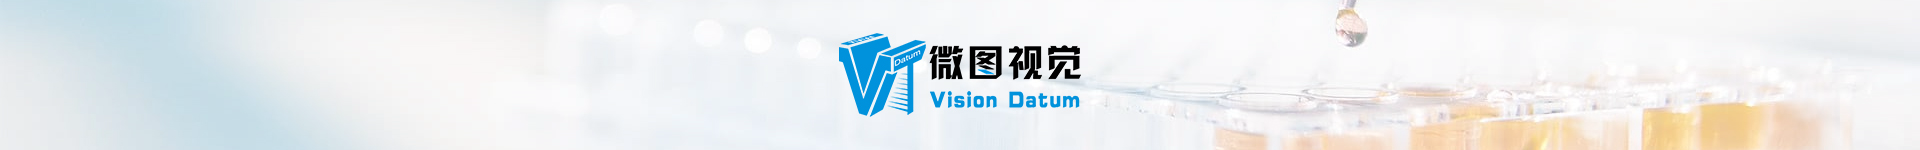 Vision Datum